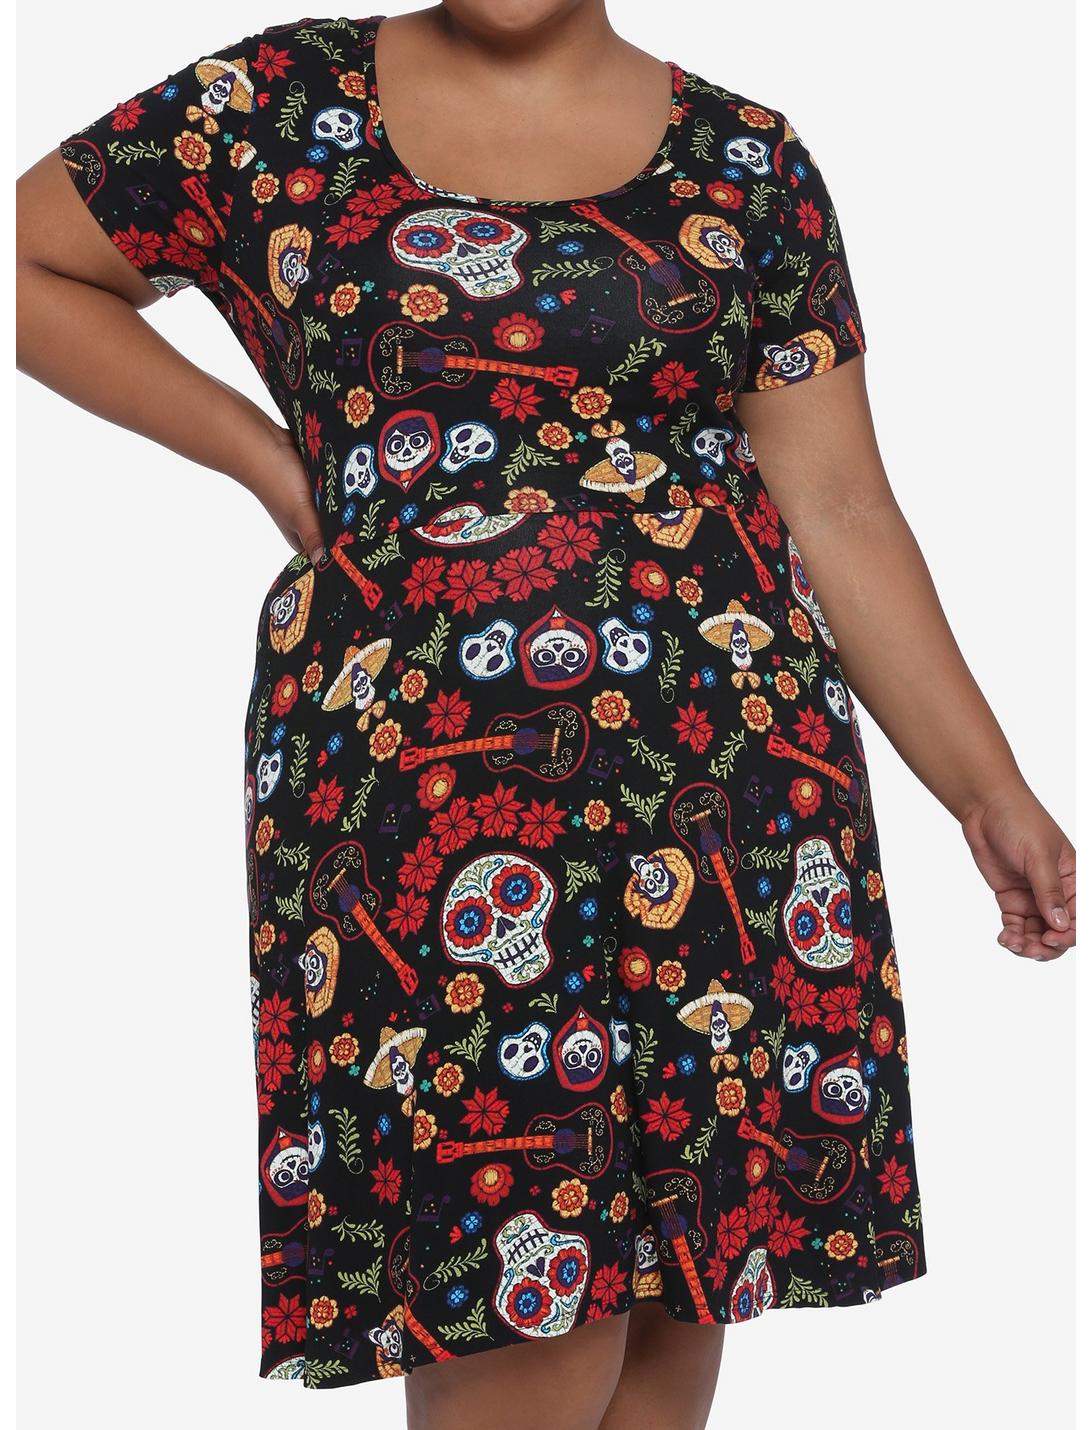 Disney Pixar Coco Lace Back Dress Plus Size, MULTI, hi-res